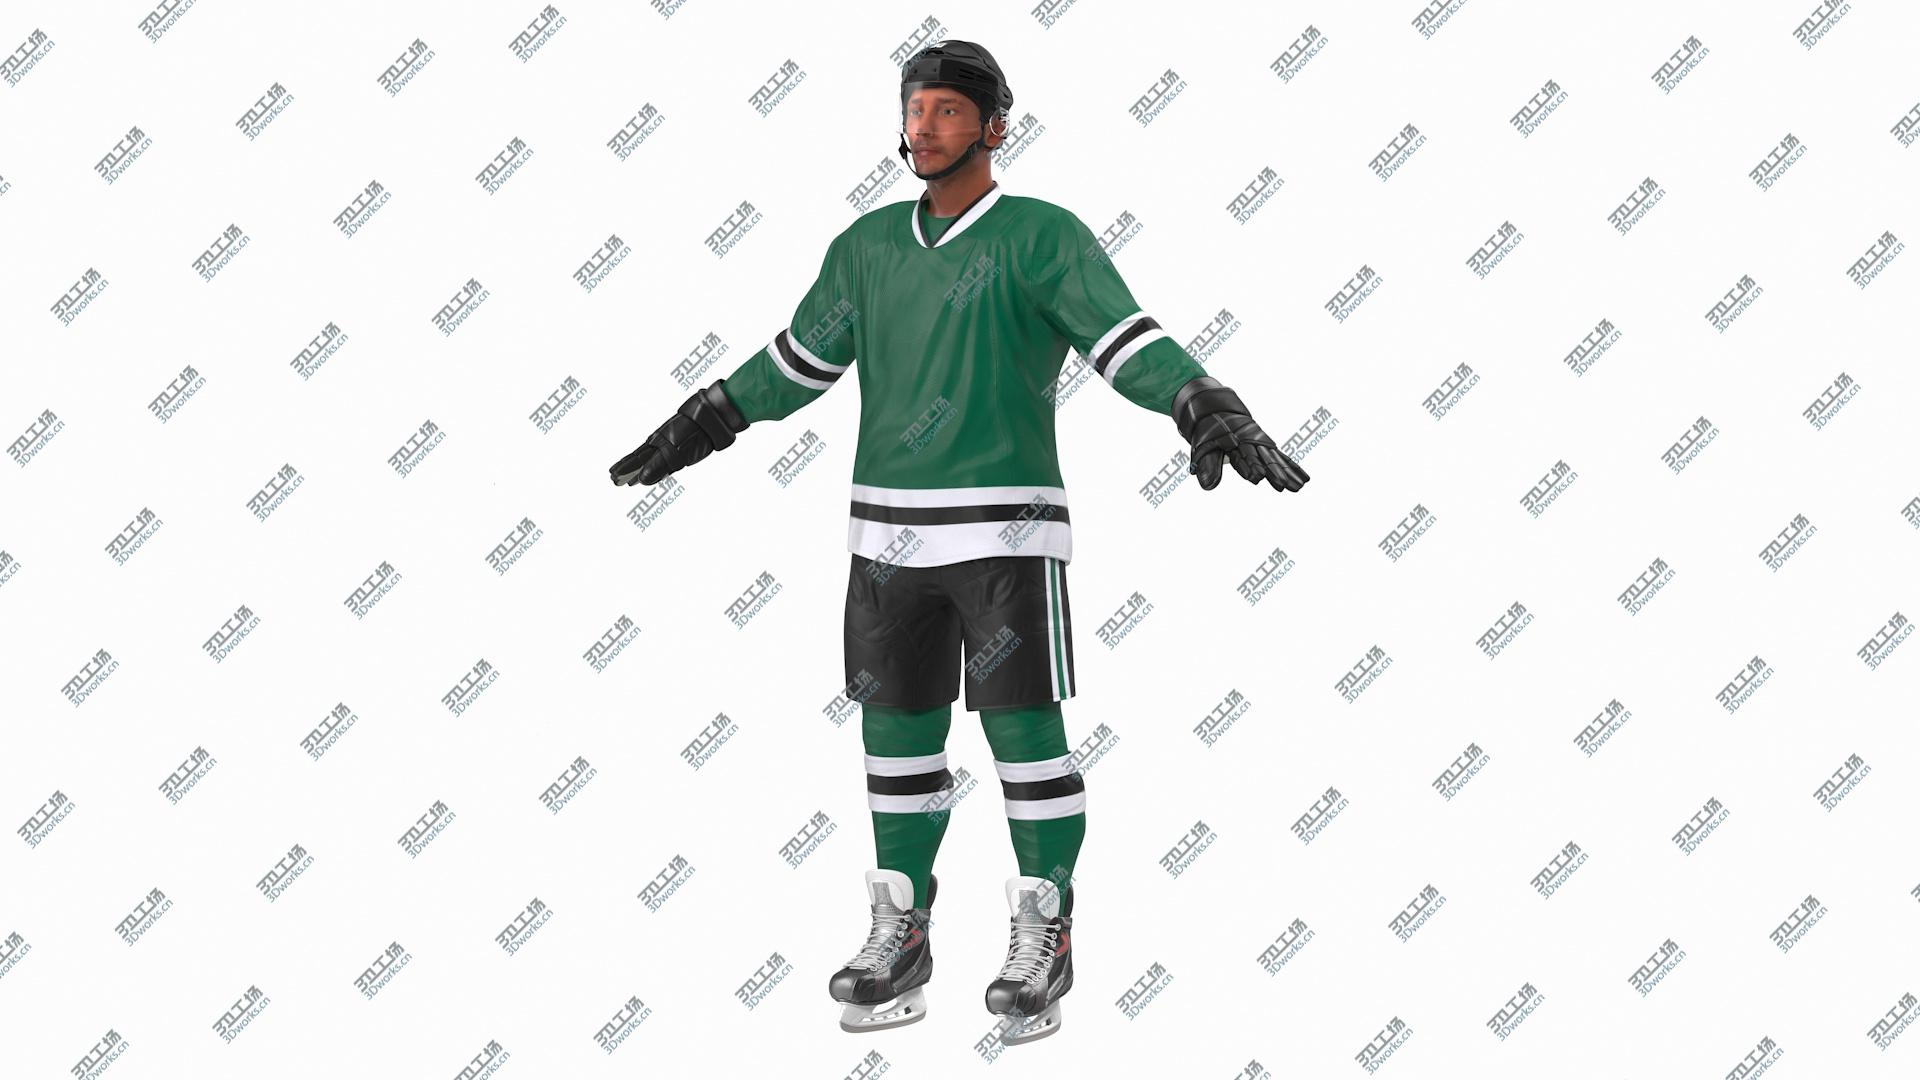 images/goods_img/202104092/Hockey Player Green 3D model/3.jpg